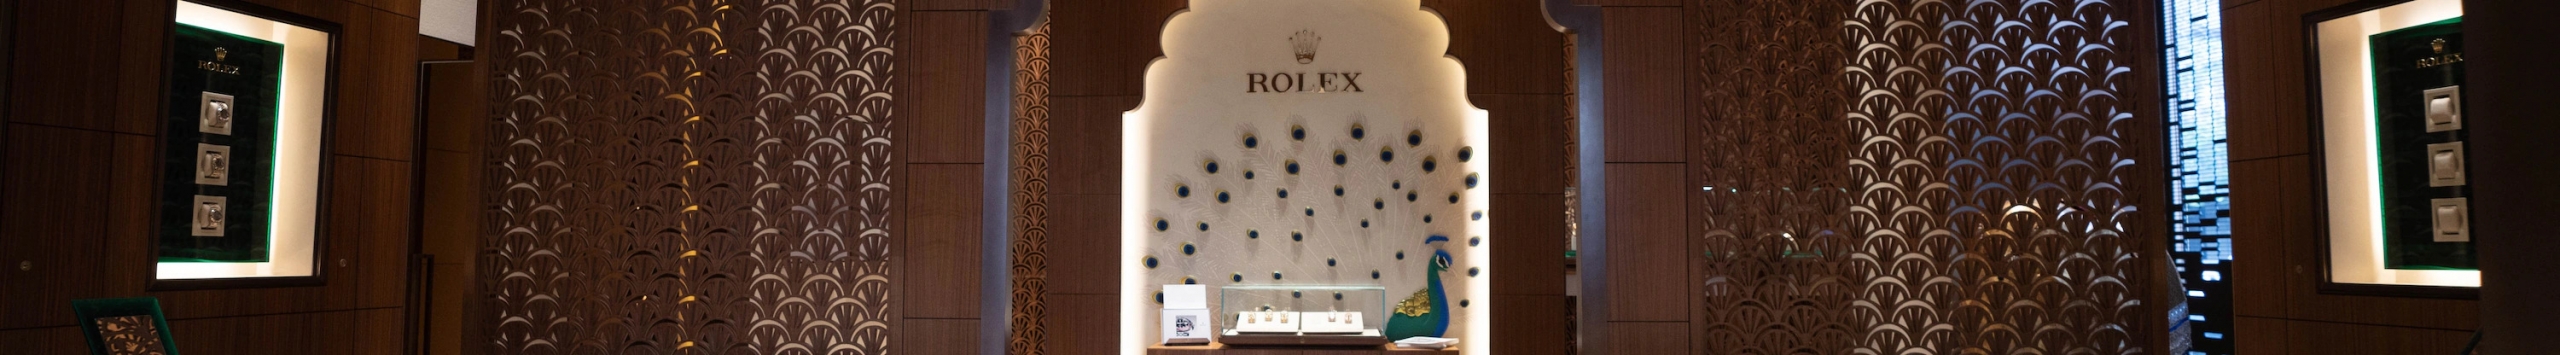 Rolex watches at Simone Ventures in Mumbai